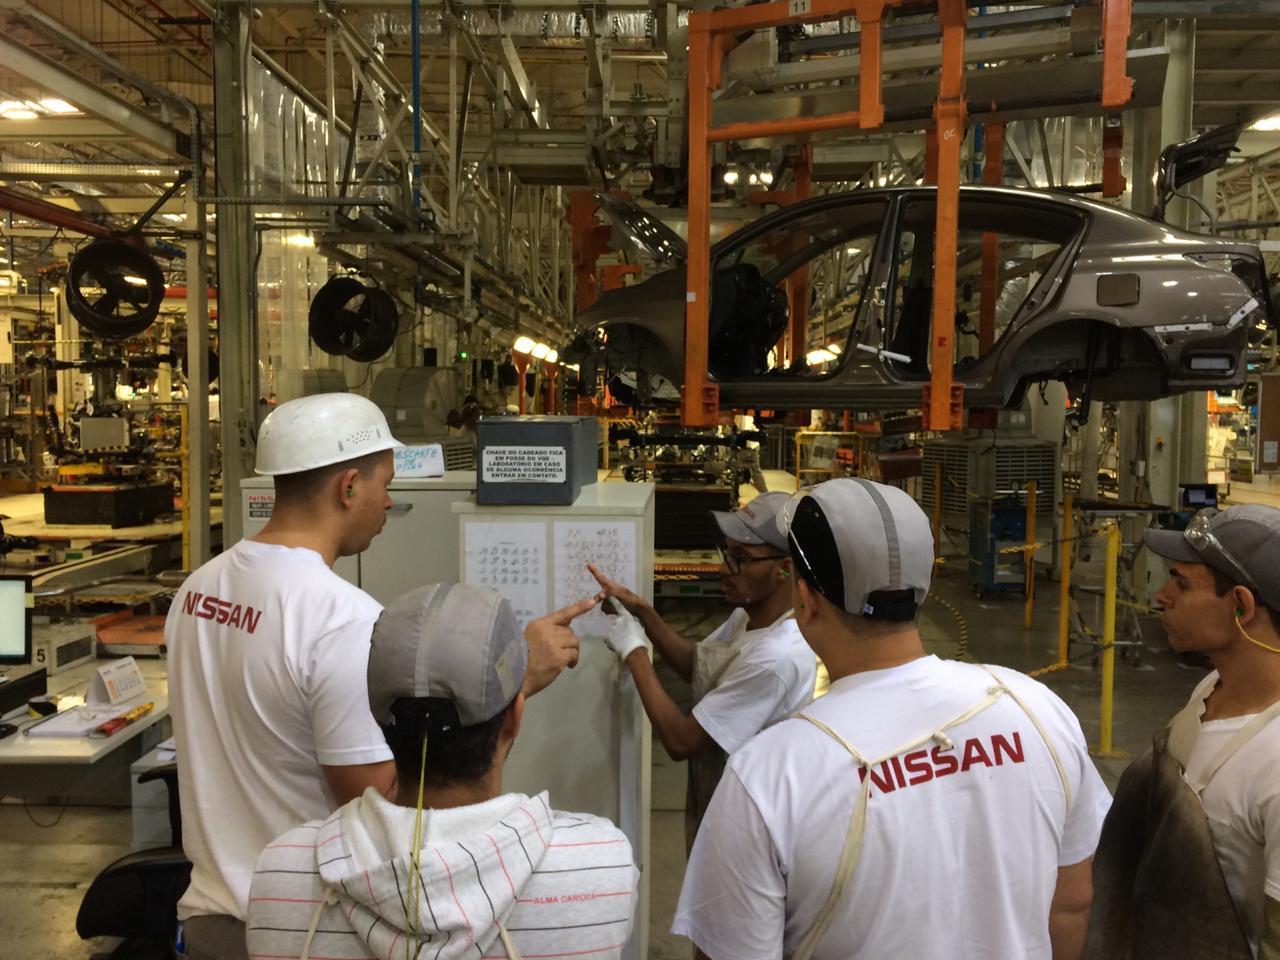 A semana inicia com vagas de emprego na multinacional japonesa fabricante de automóveis Nissan em suas fábricas do RJ, SP e PR